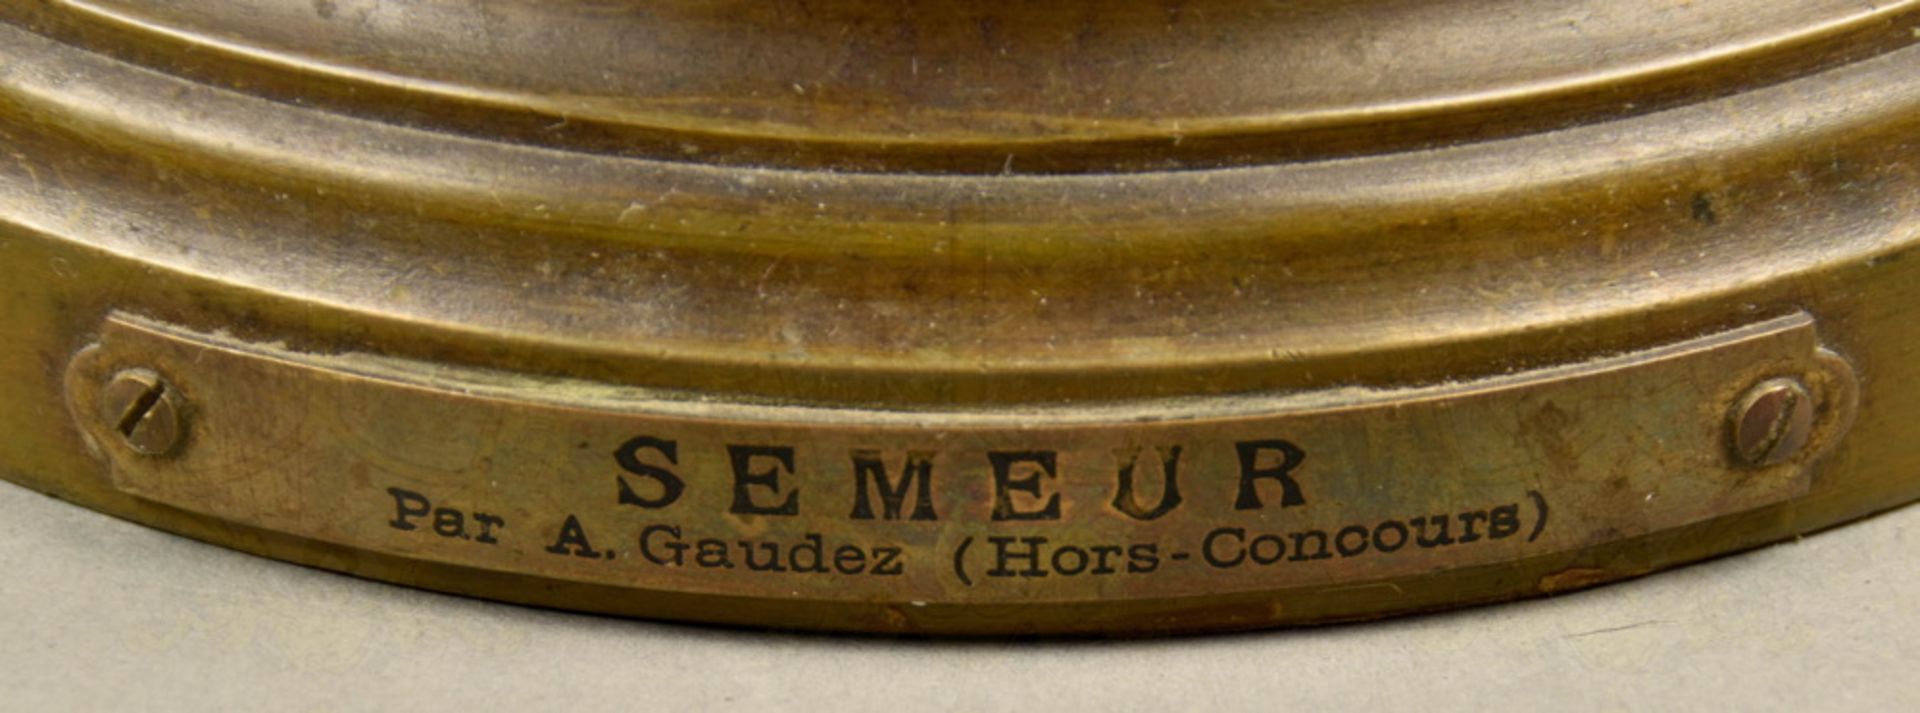 Bronzeplastik Adrien E. Gaudez "Der Sämann" - Image 5 of 5